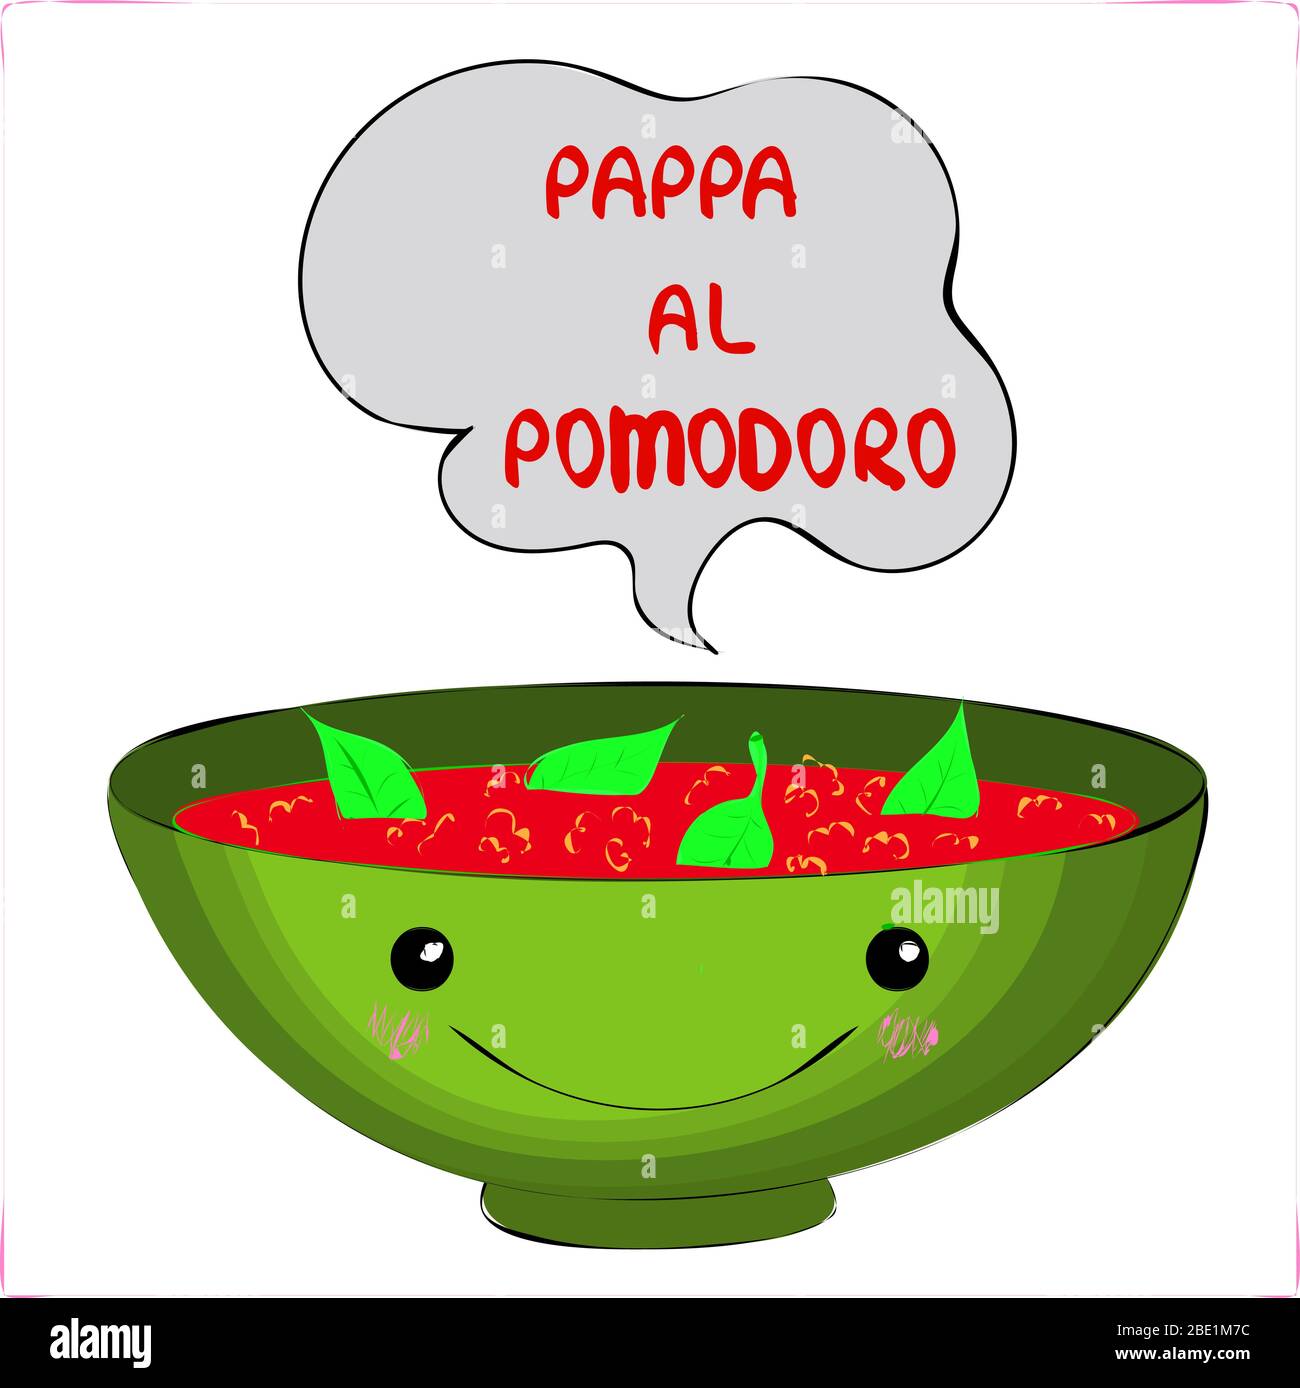 Carte avec nourriture kawai - Pappa al Pomodoro, tomate toscane, courgettes, basilic et soupe de pain mâcher des personnages et du texte drôles, desserts sur un fond blanc Illustration de Vecteur